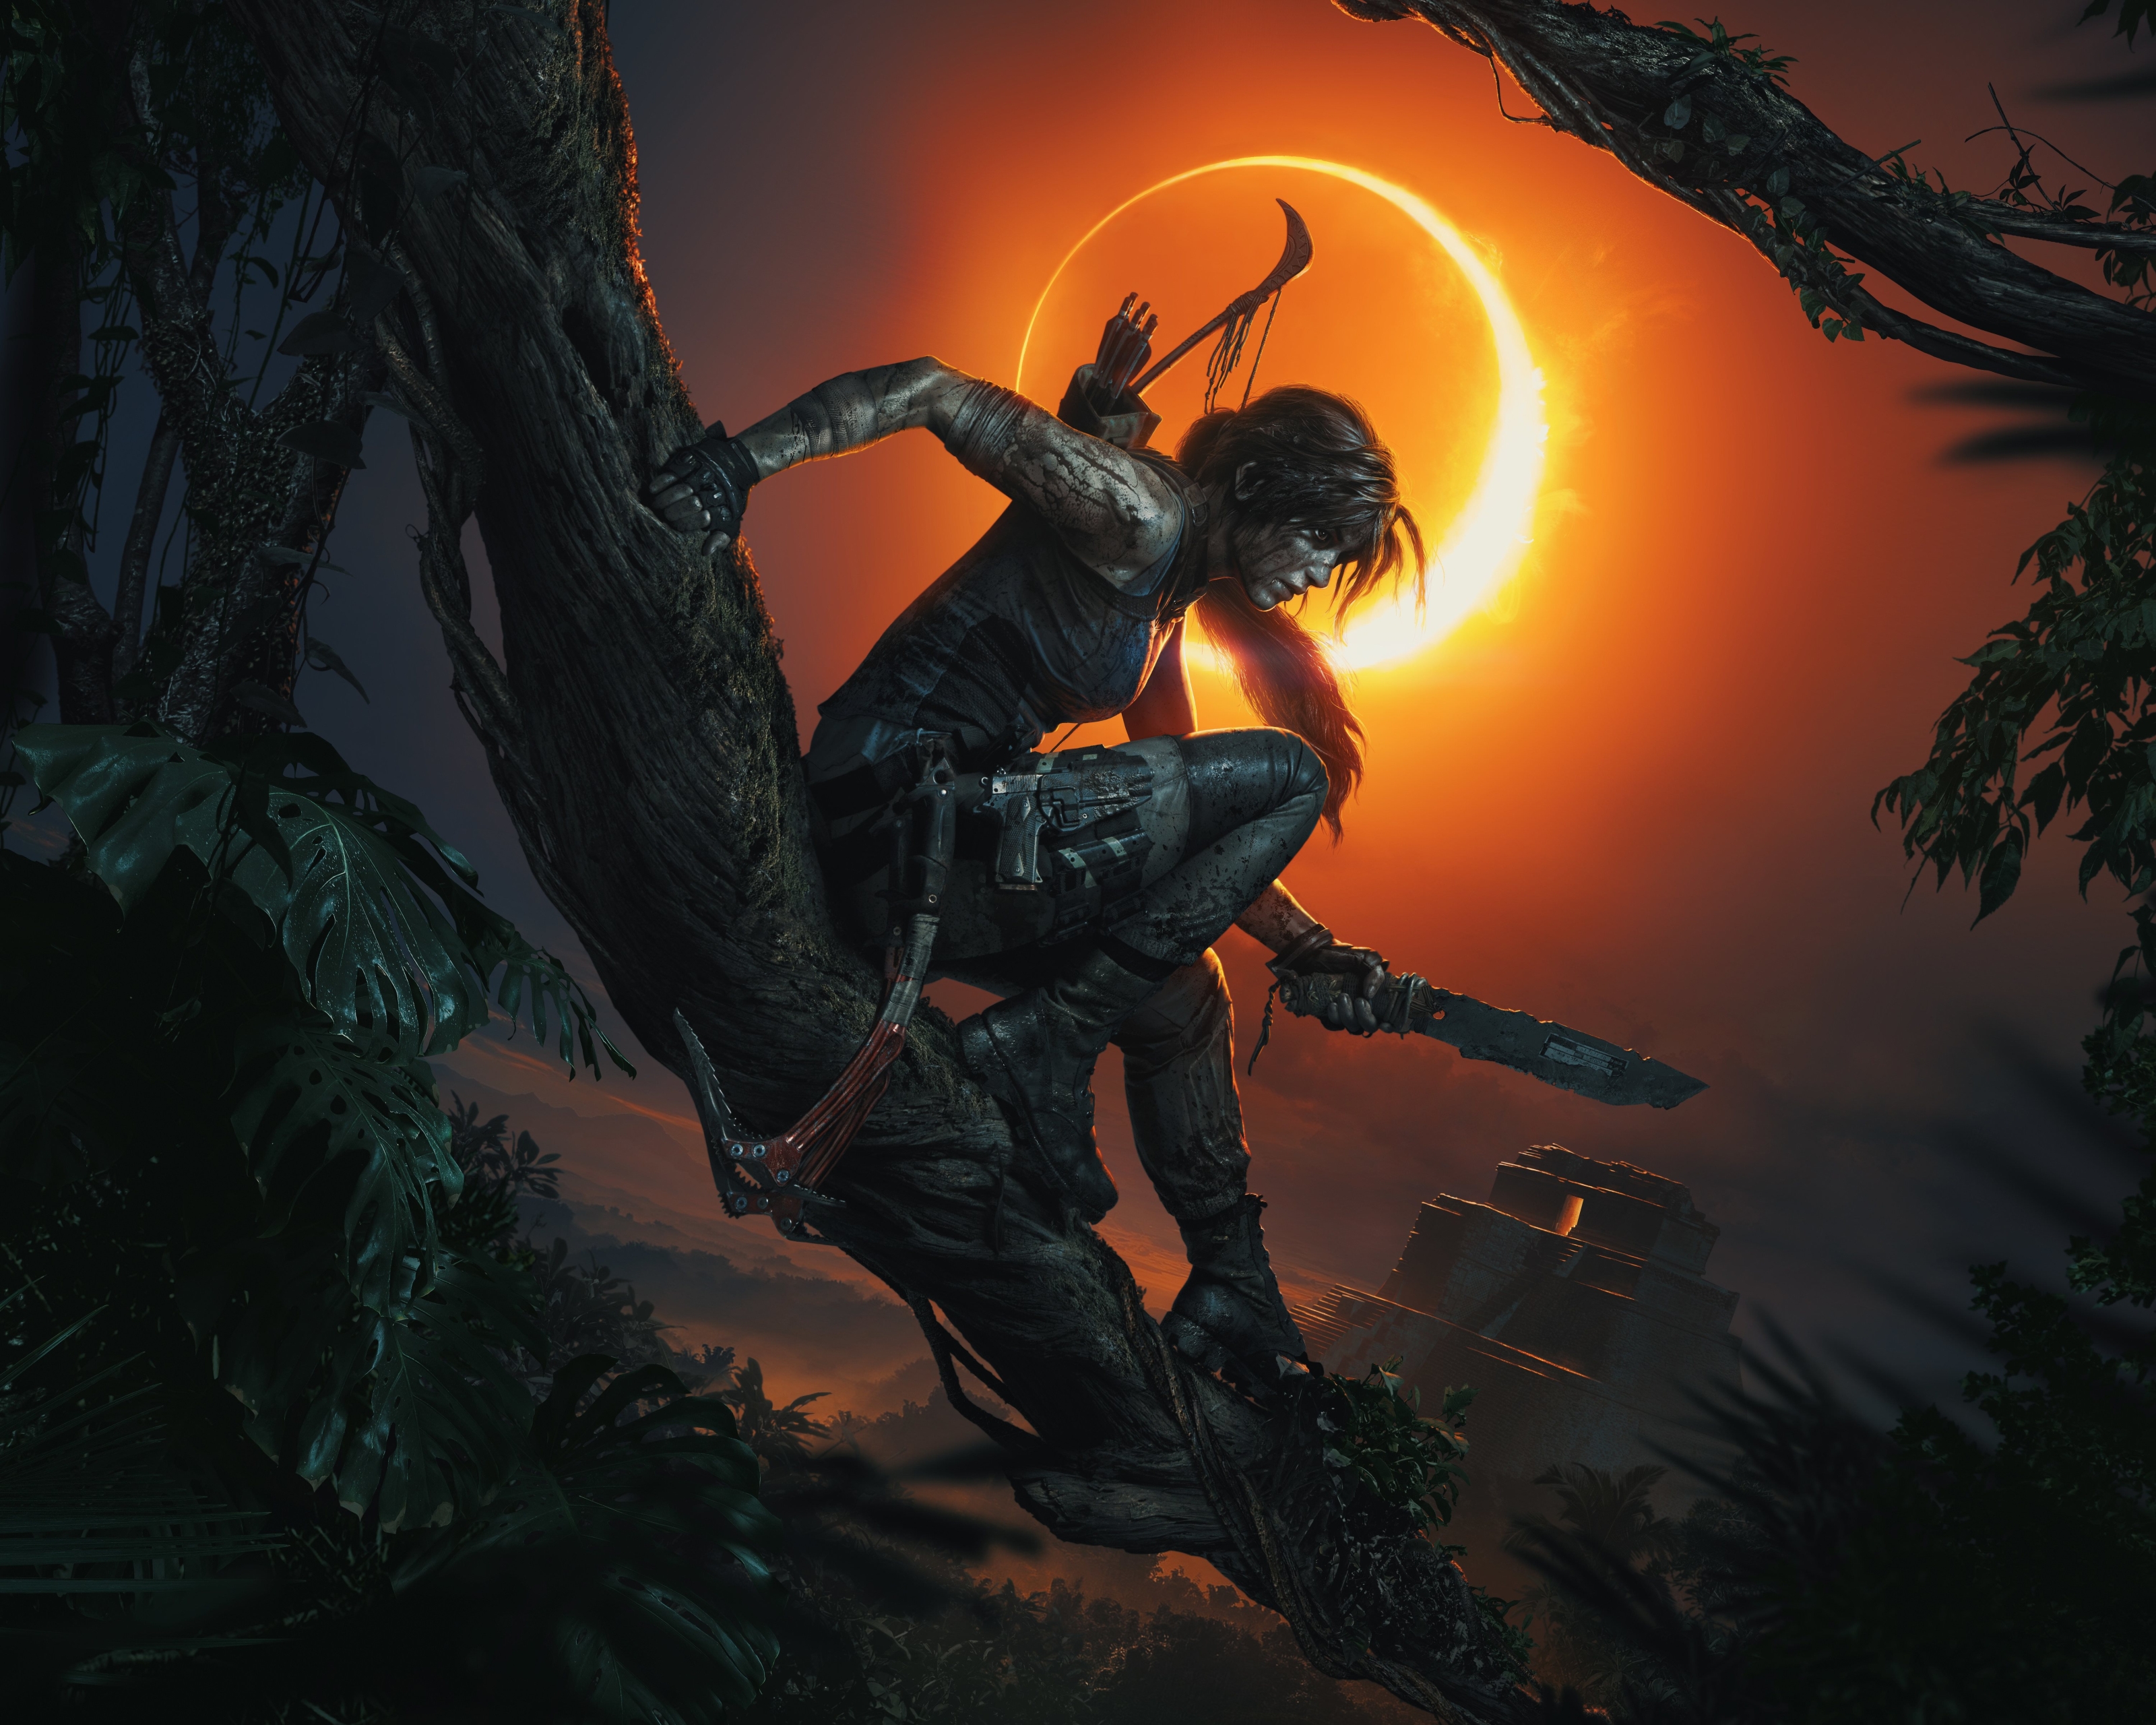 Descarga gratuita de fondo de pantalla para móvil de Noche, Tomb Raider, Videojuego, Mujer Guerrera, Lara Croft, Shadow Of The Tomb Raider.